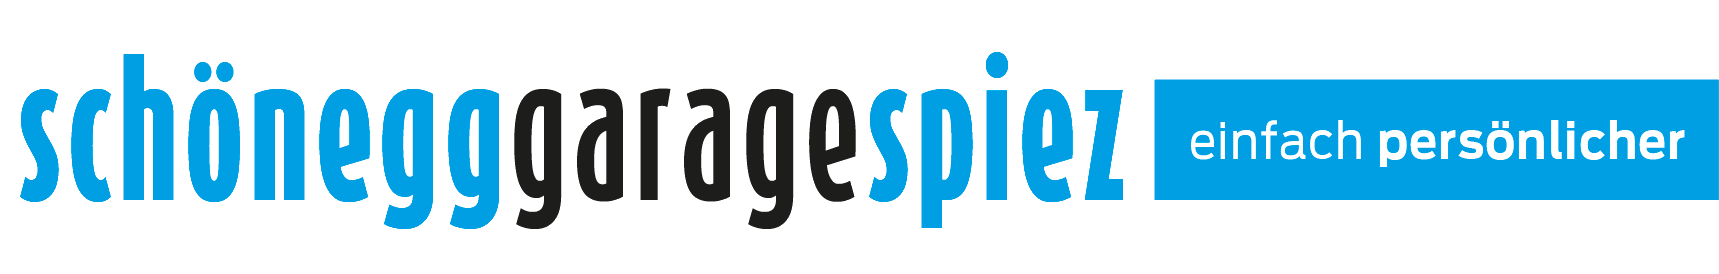 Schönegg-Garage Logo